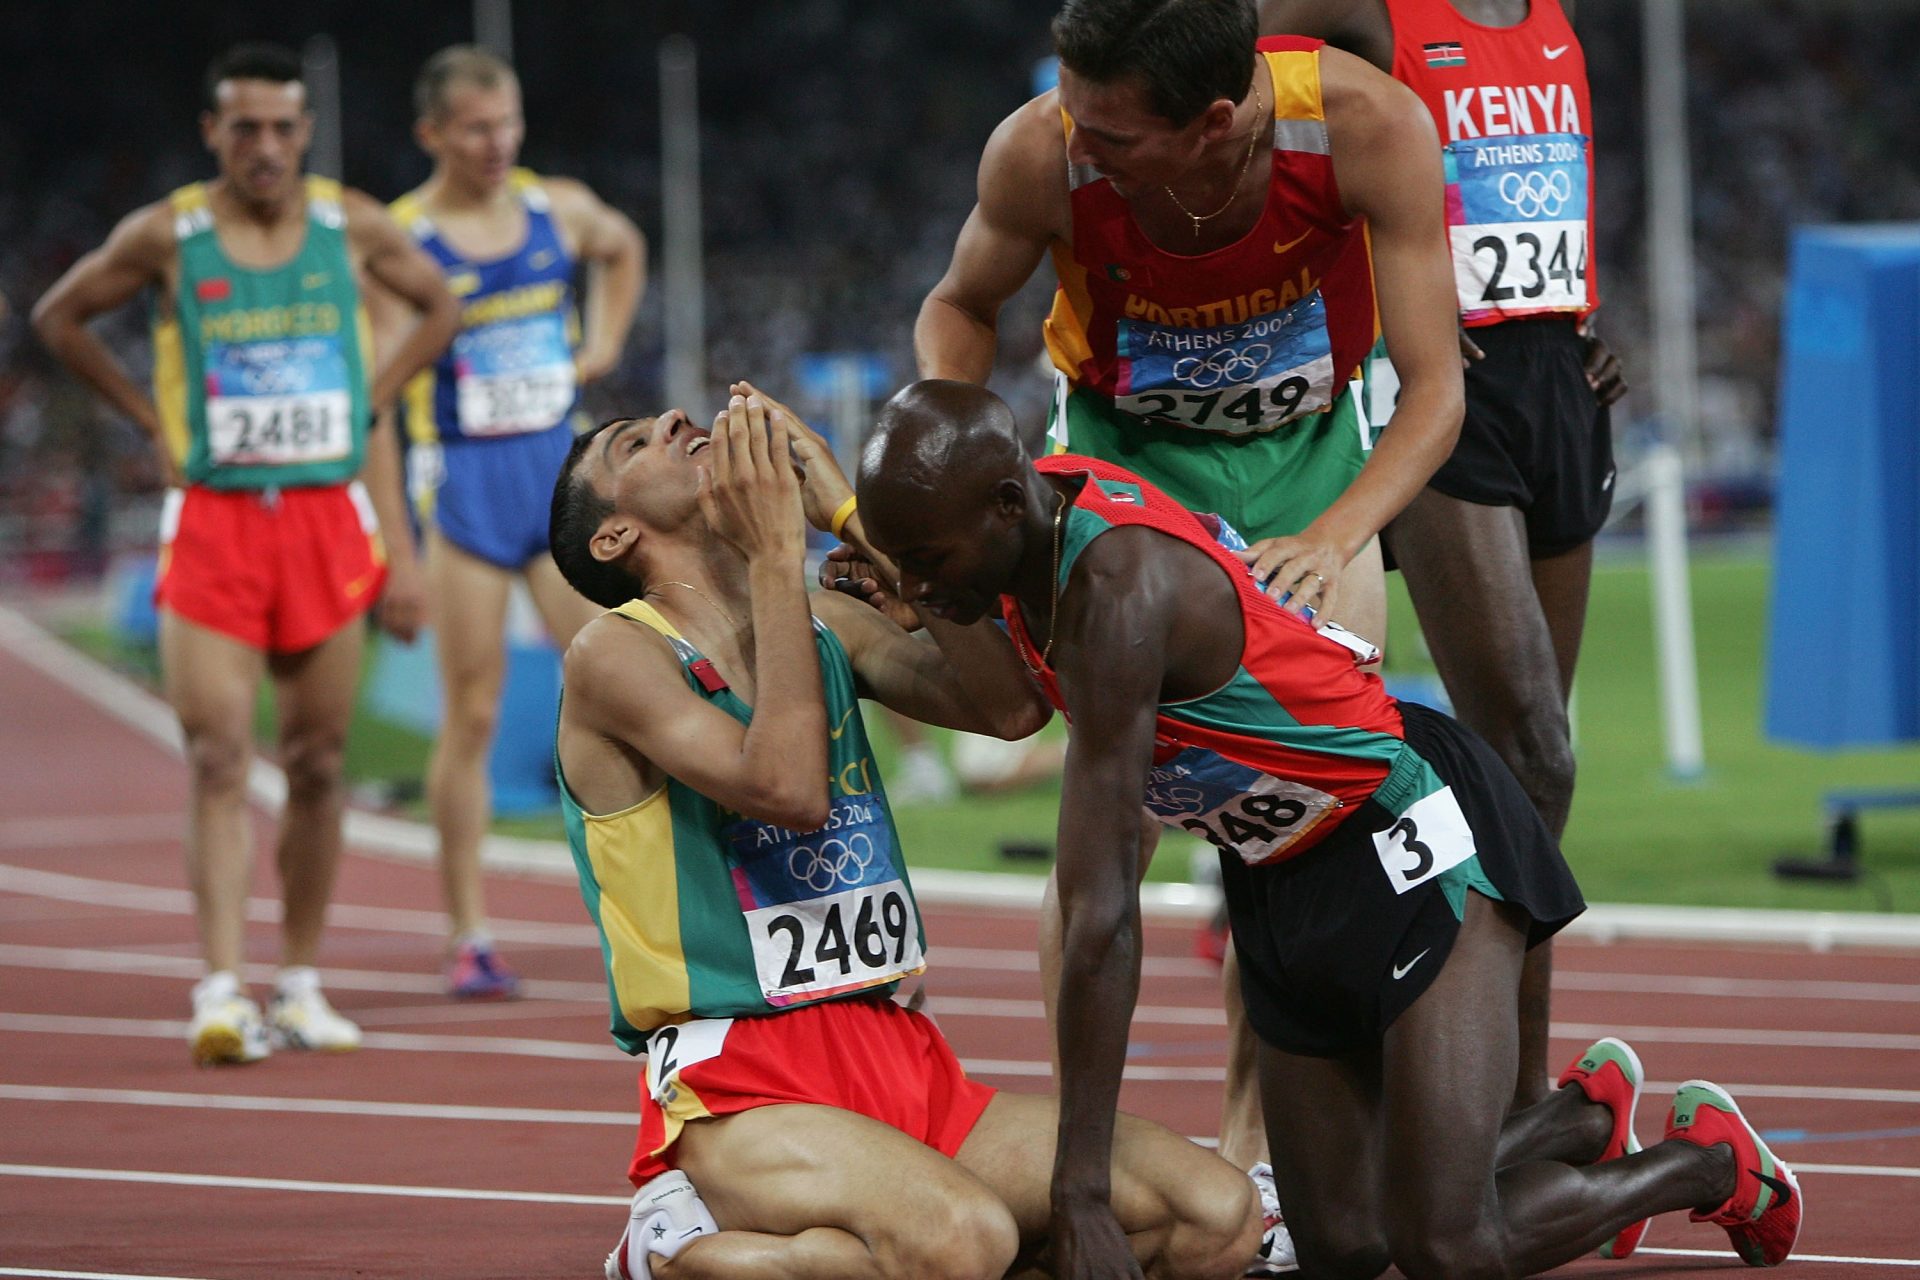 Men's 1500m: 3:26.00 - Hicham El Guerrouj